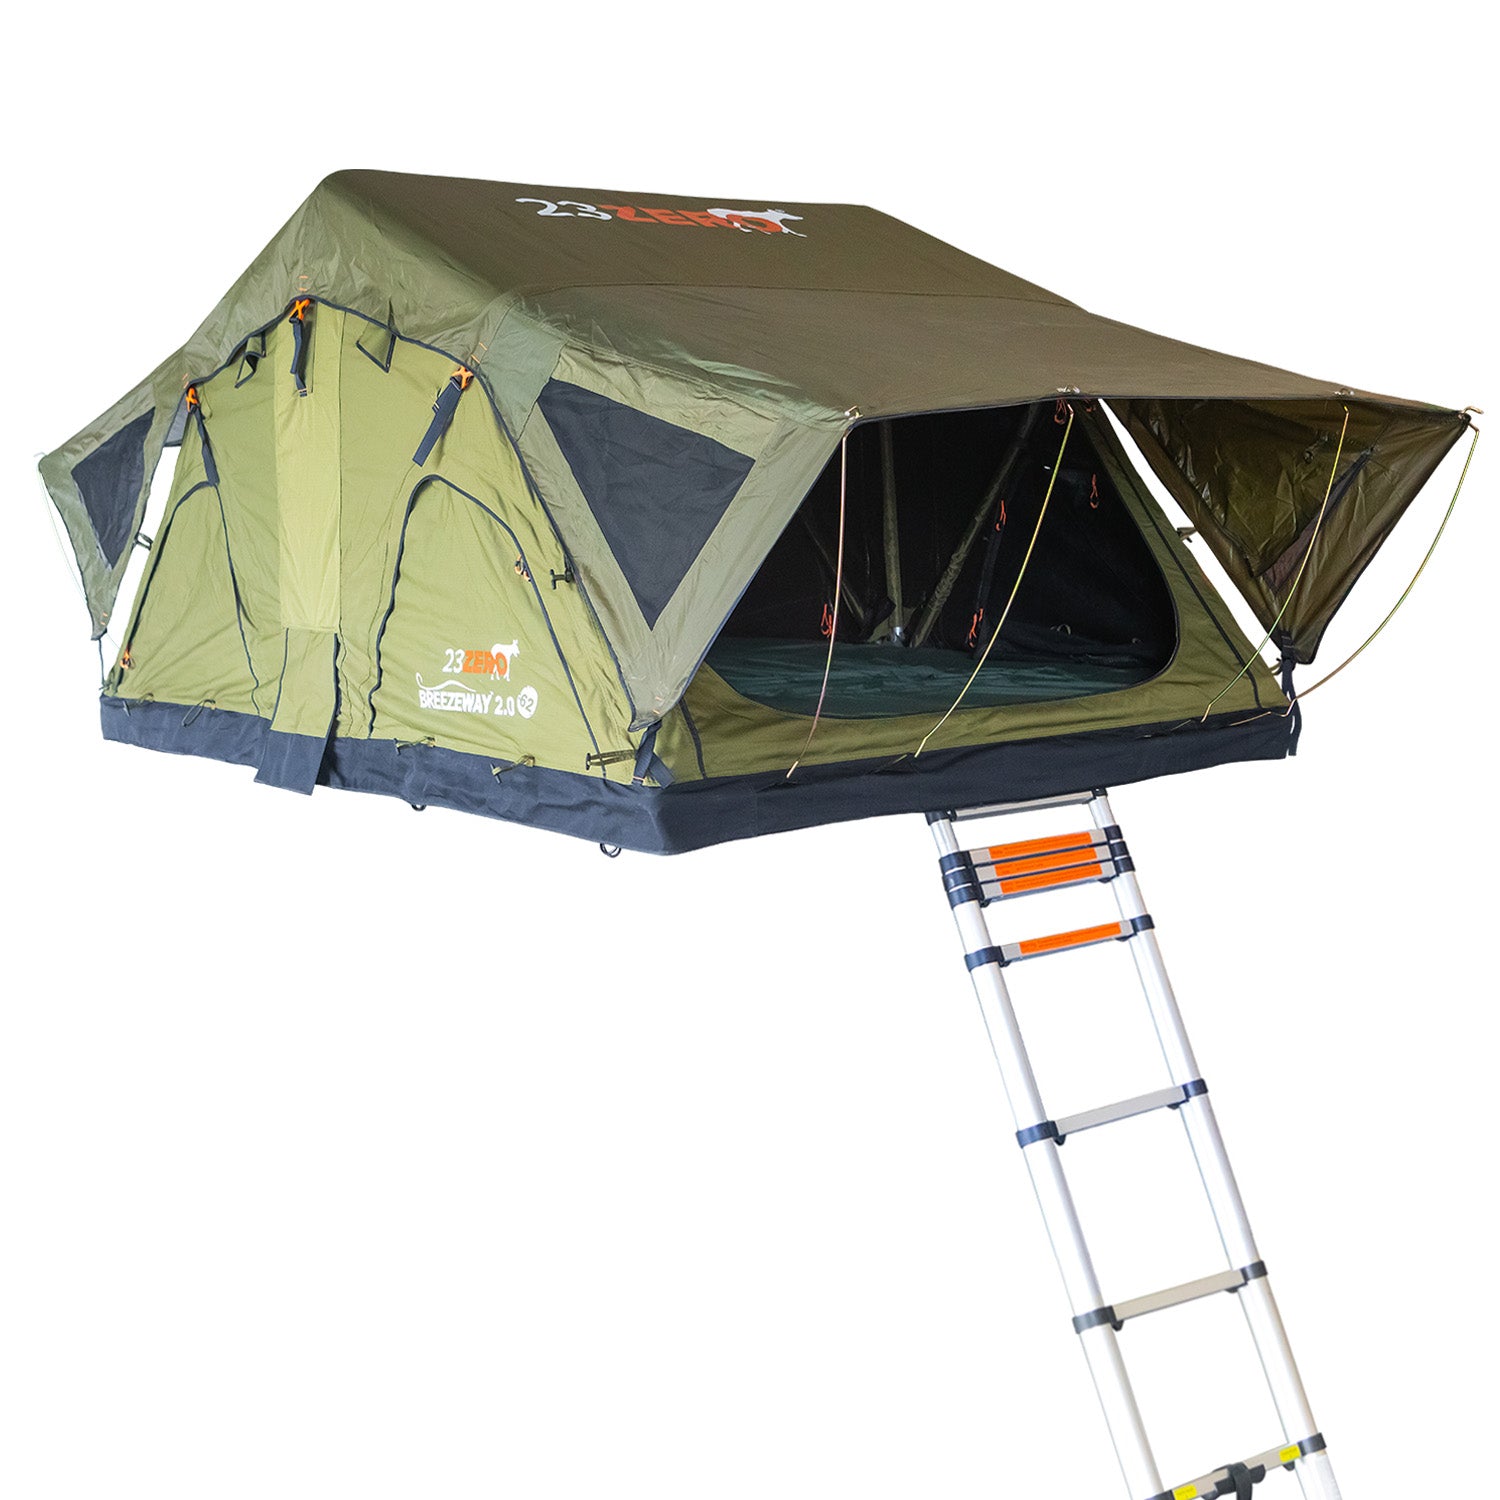 23zero Breezeway Rooftop Tent – Element Outdoors and Overland